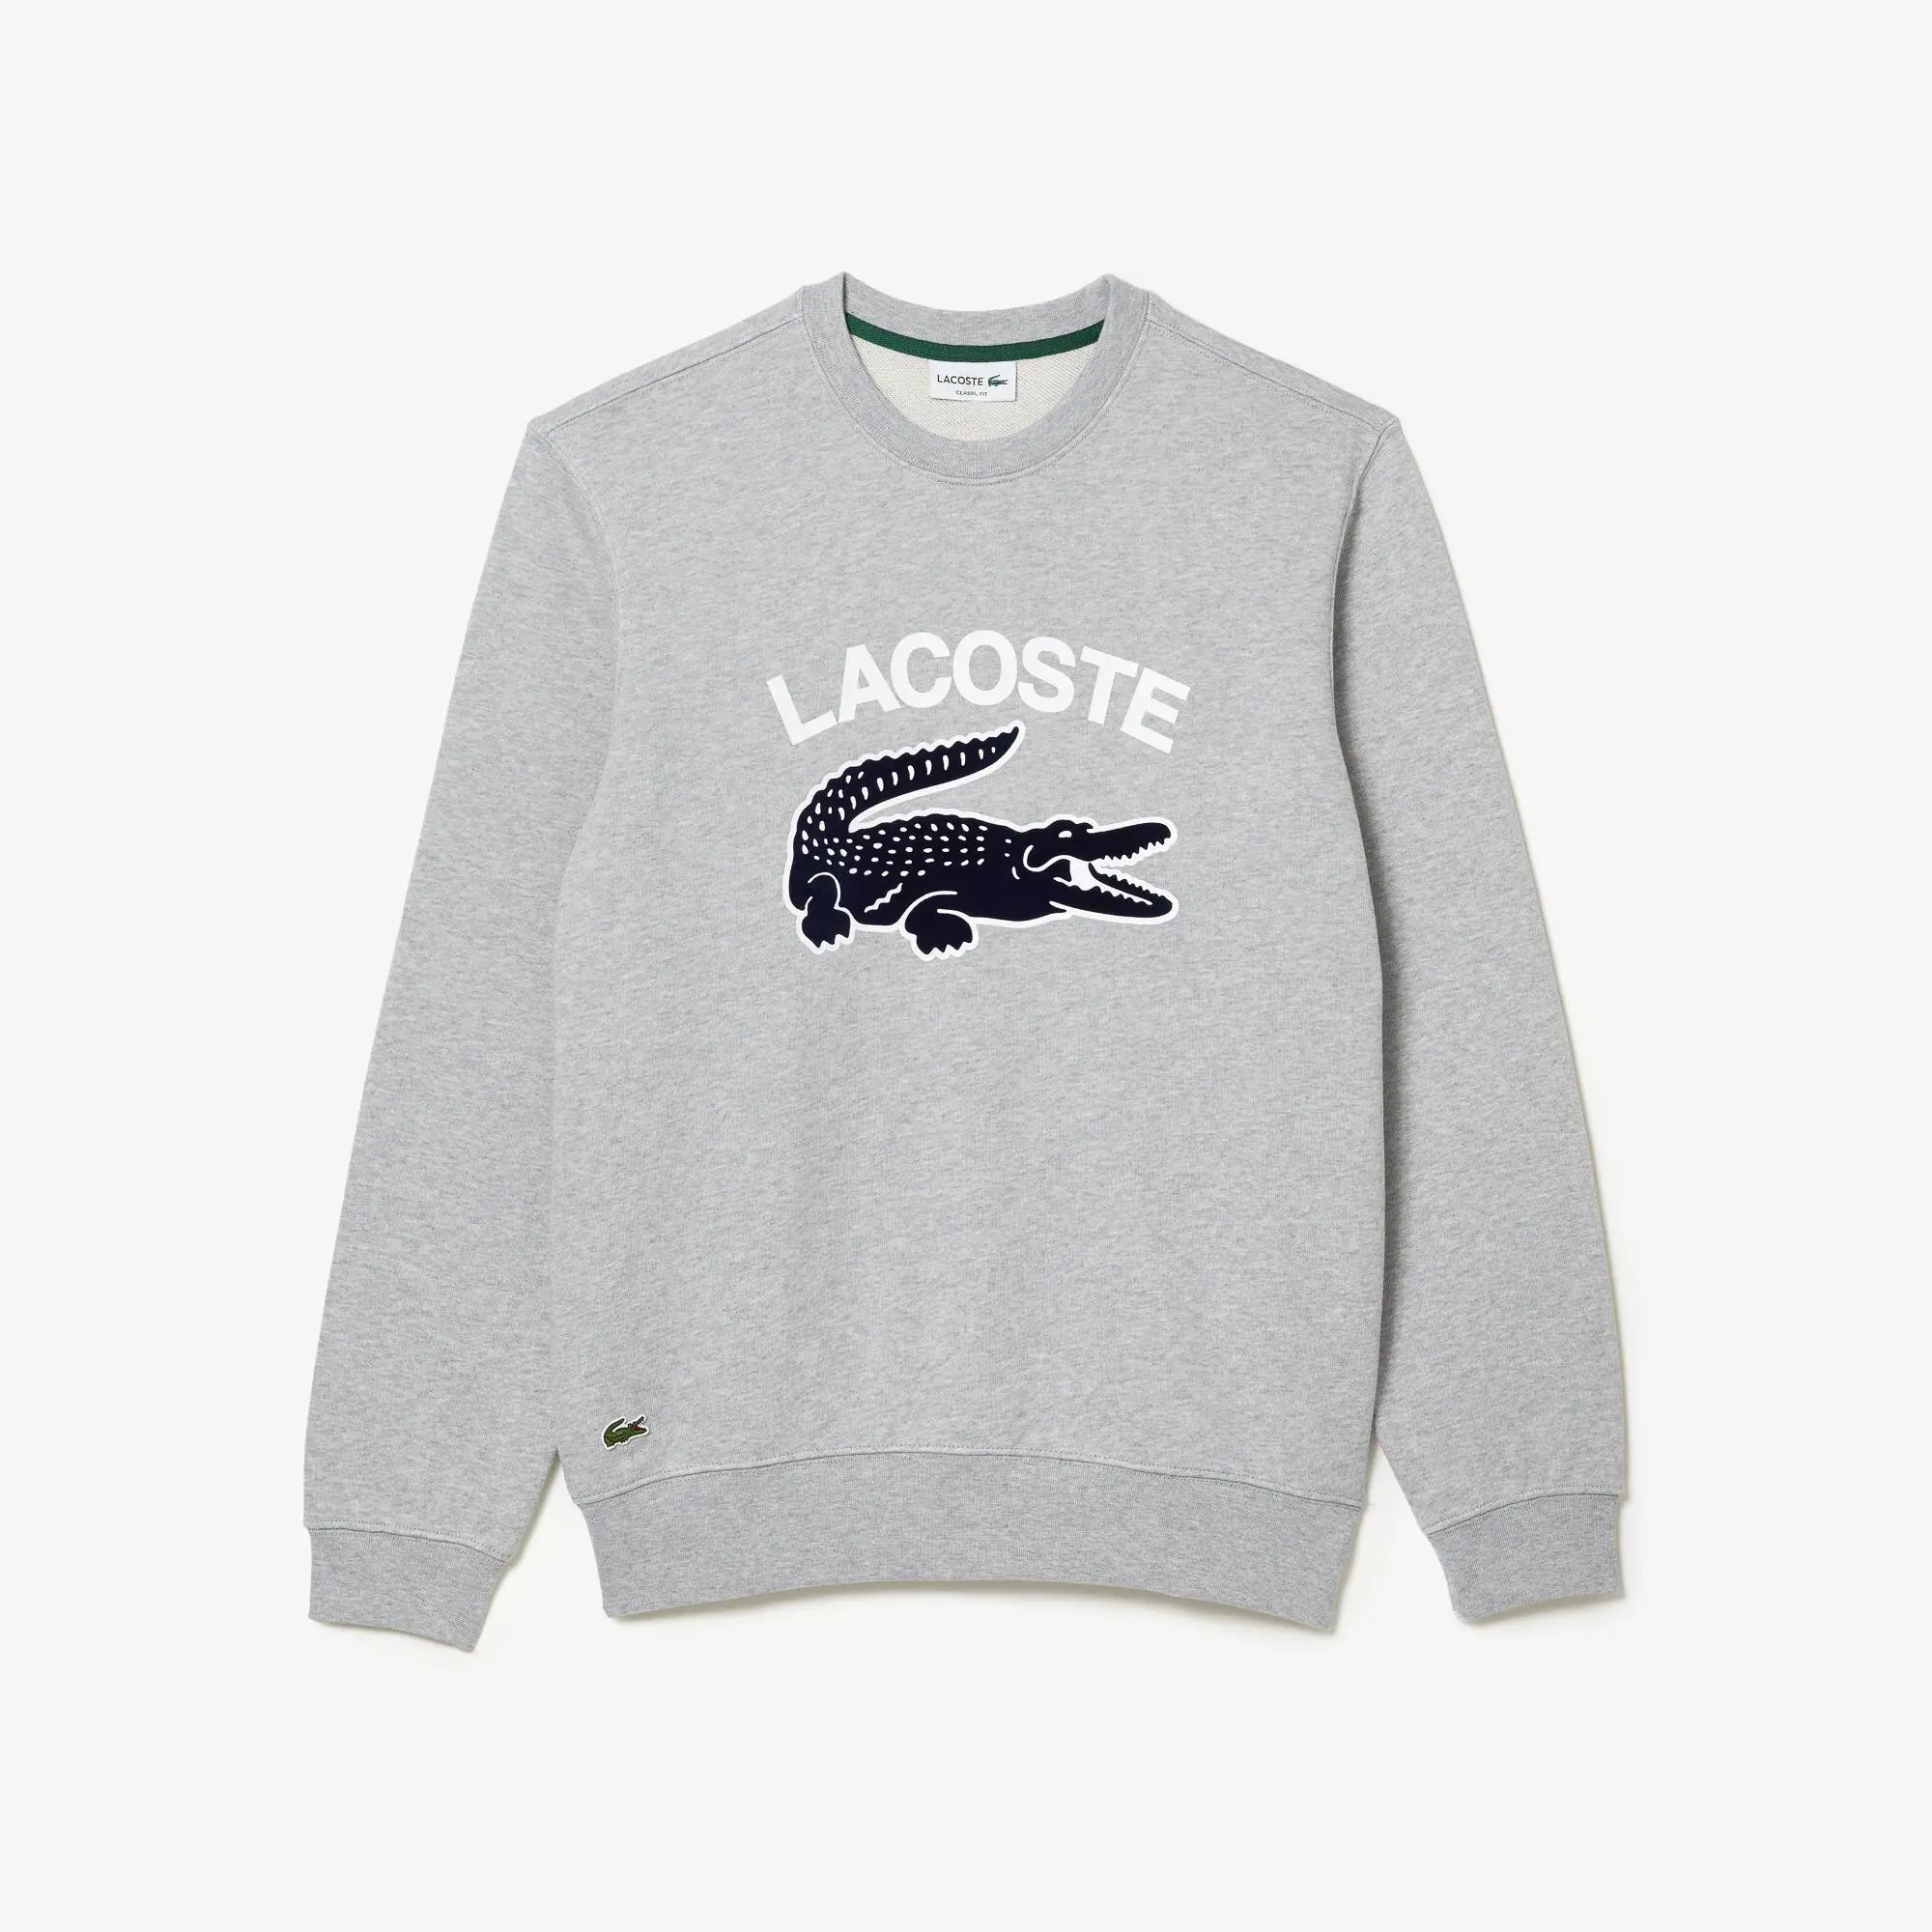 Lacoste Sweatshirt de decote redondo com estampado do crocodilo Lacoste para homem. 2